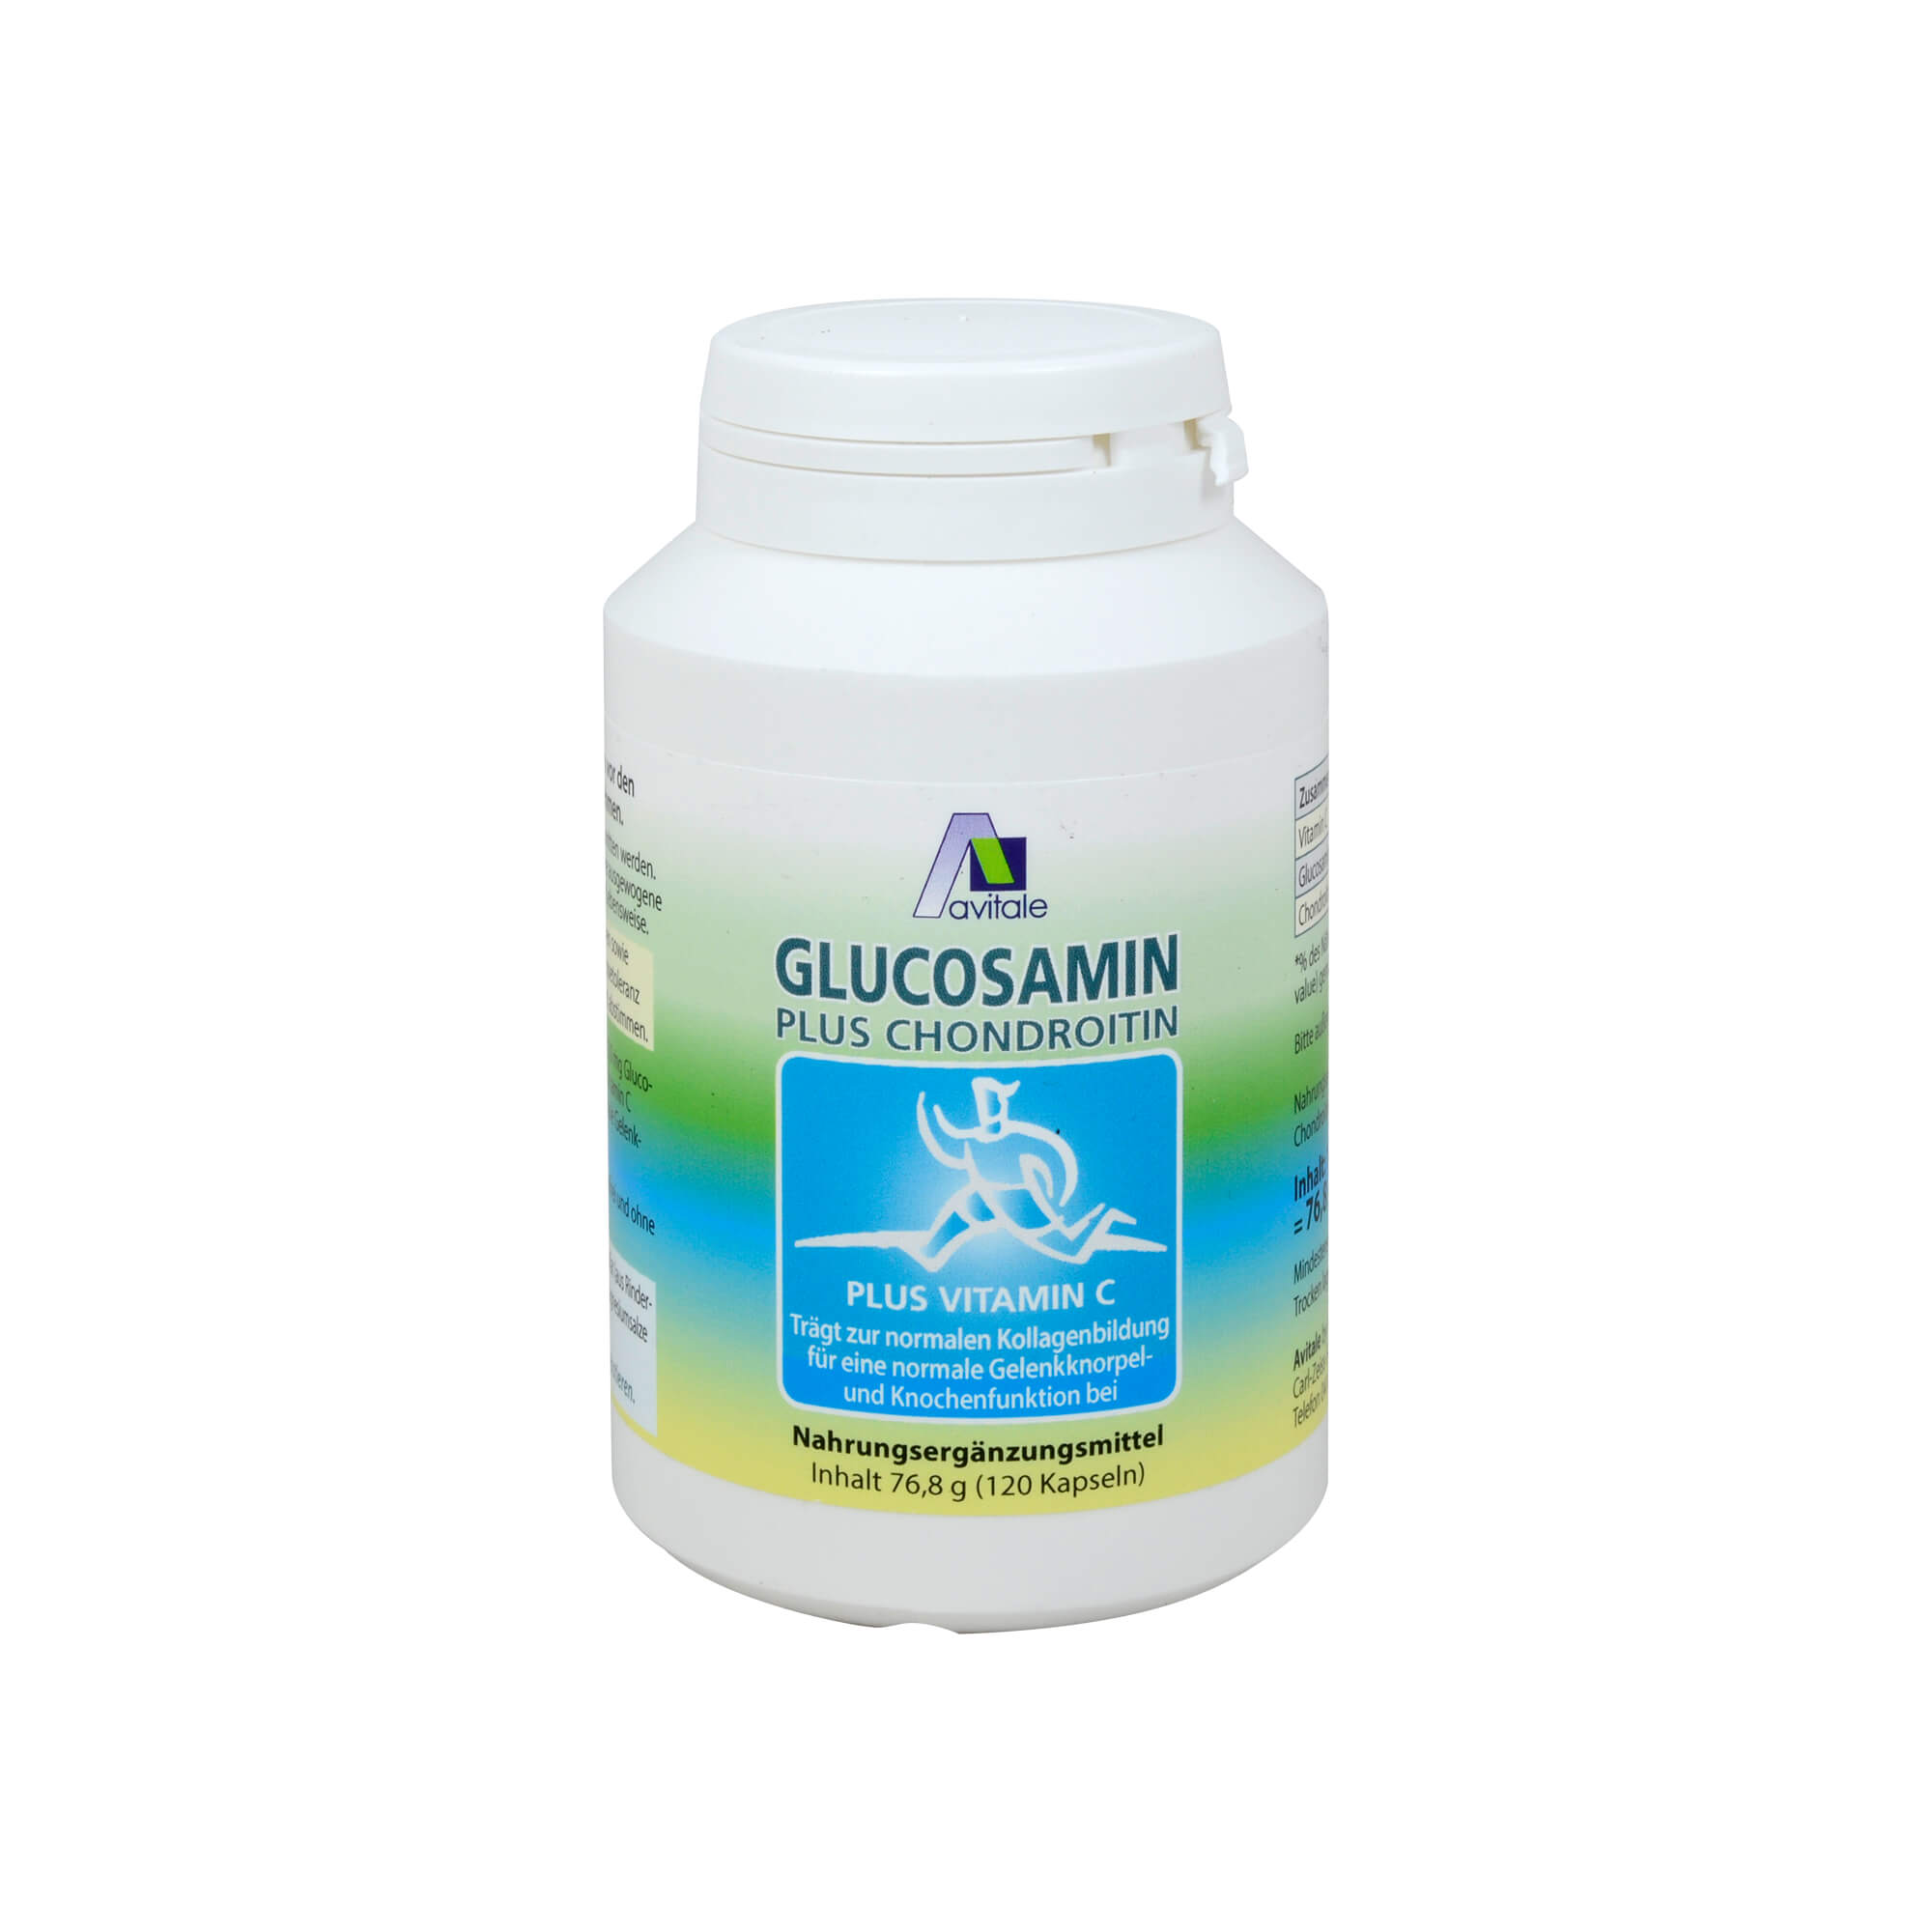 Nahrungsergänzungsmittel mit Glucosaminsulfat und Chondroitinsulfat.